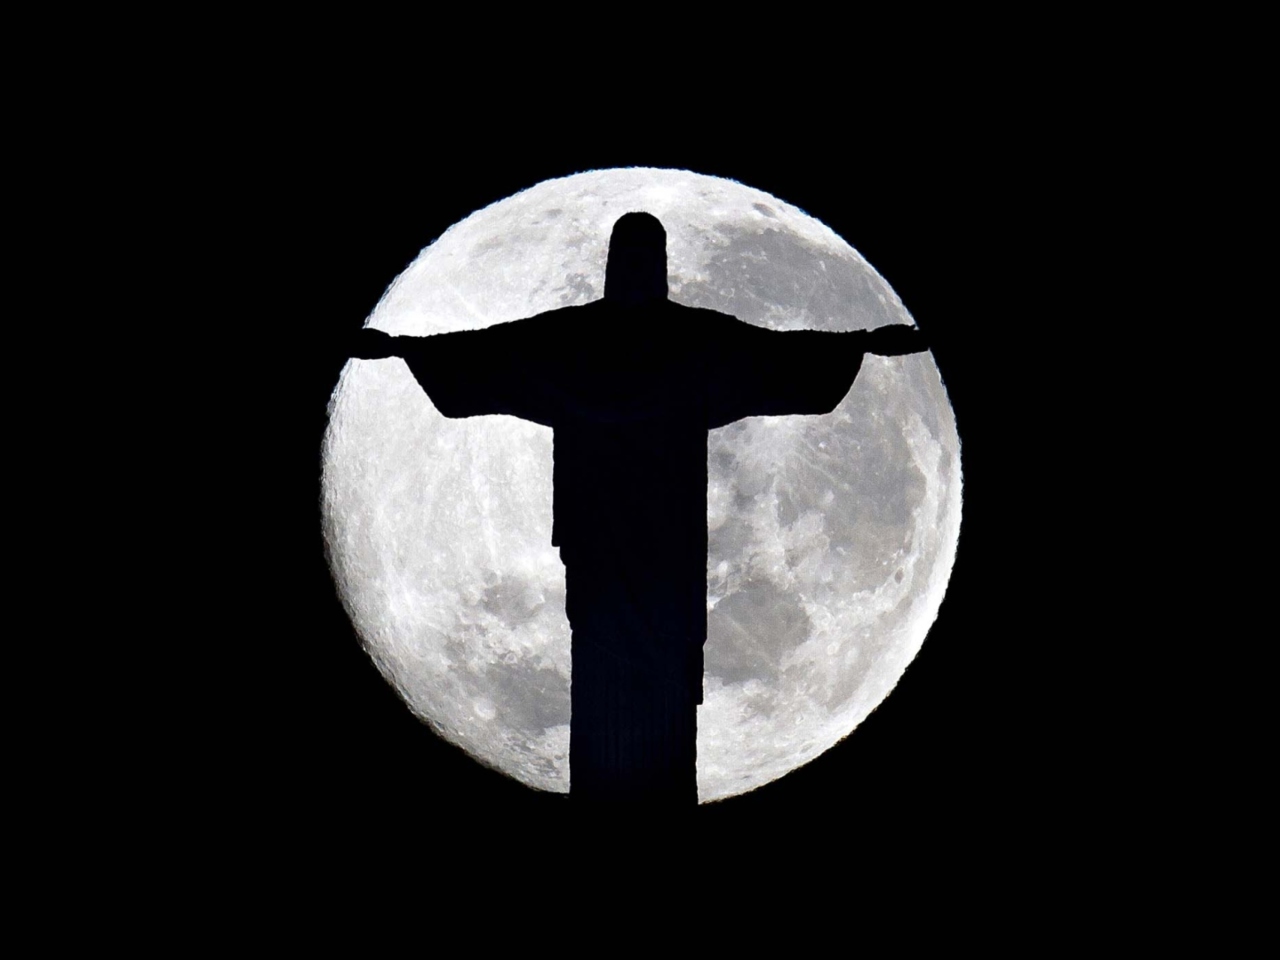 Обои Full Moon And Christ The Redeemer In Rio De Janeiro 1280x960